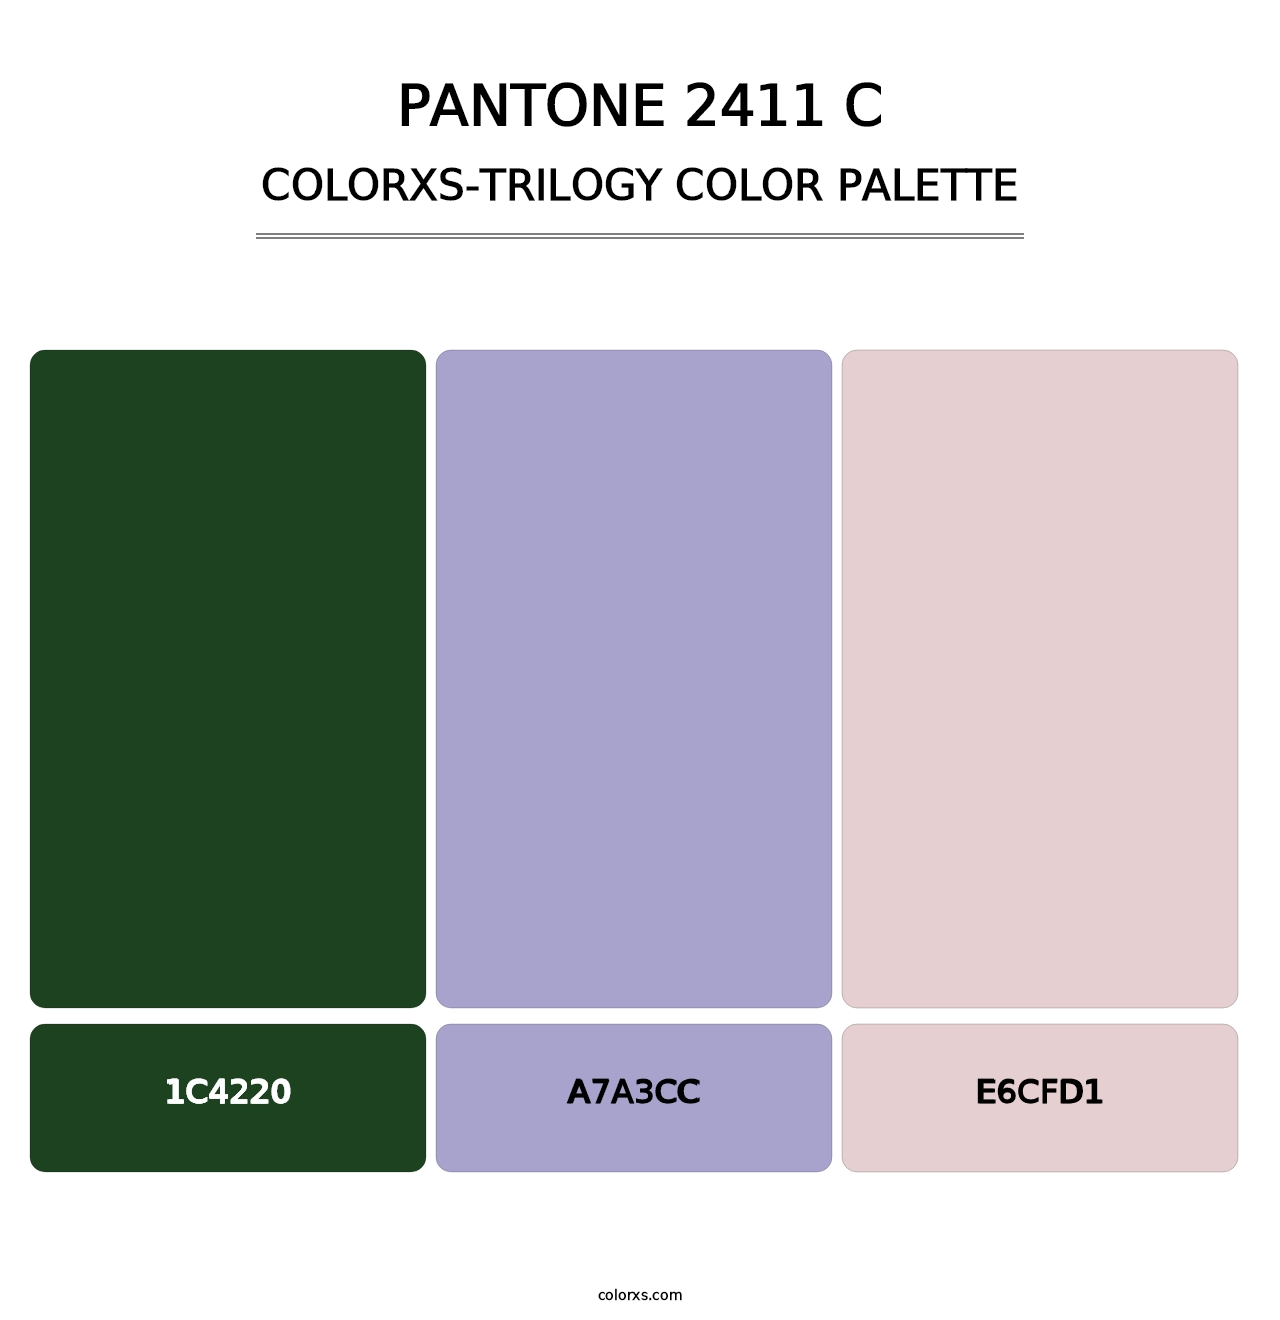 PANTONE 2411 C - Colorxs Trilogy Palette